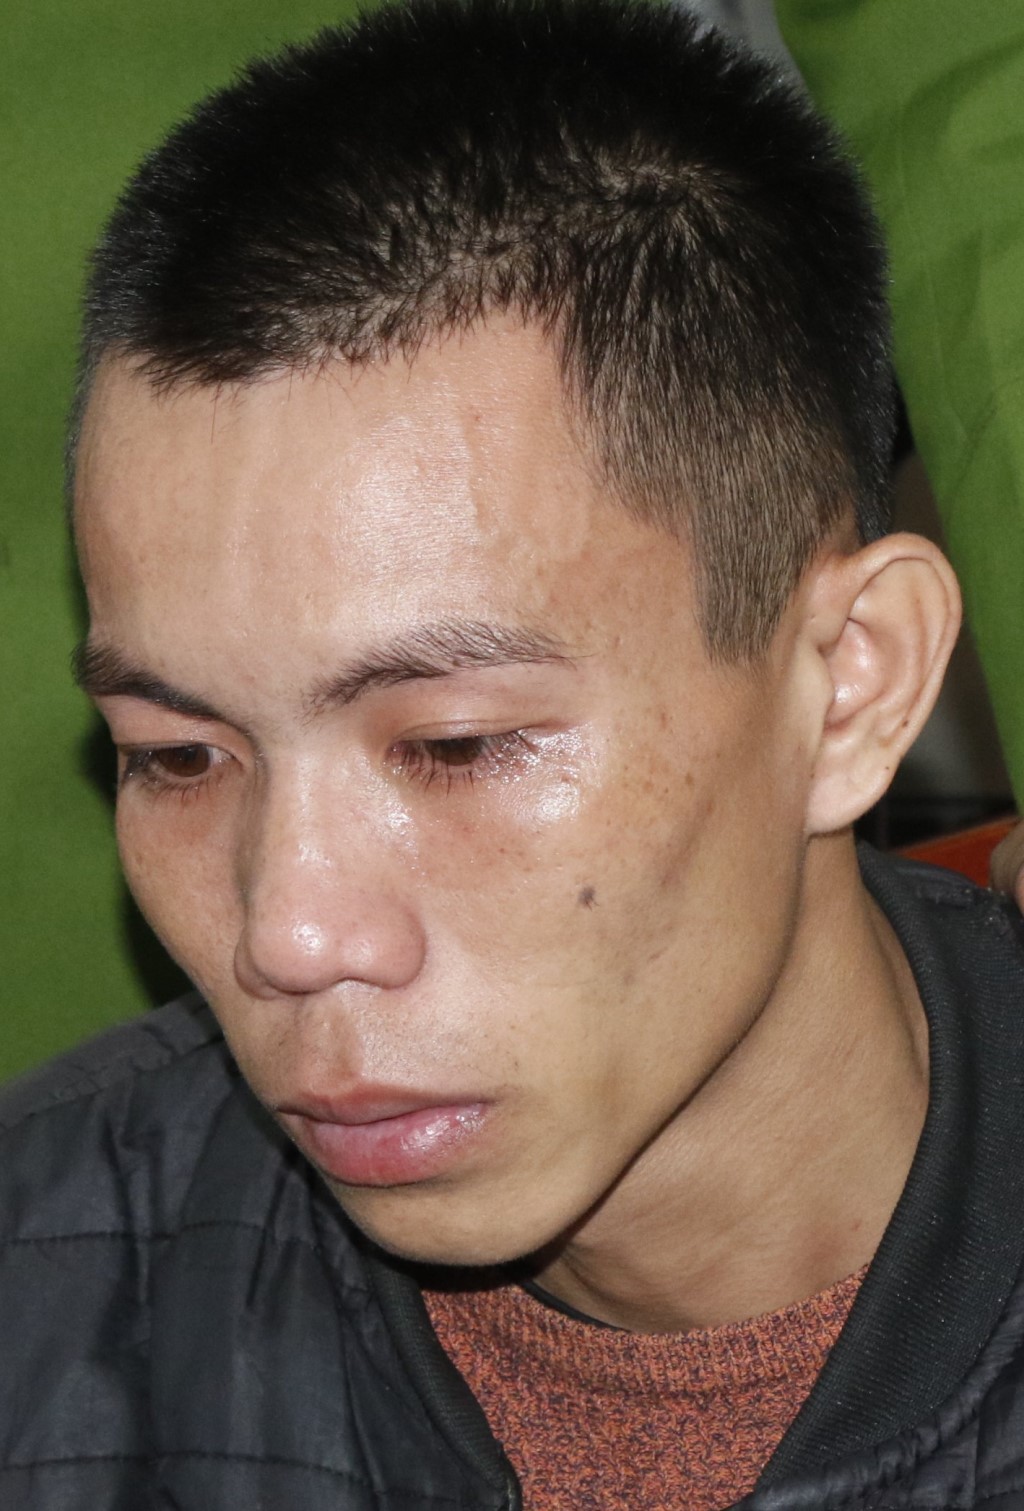  Tại cơ quan điều tra, Quang Văn Toàn khai nhận toàn bộ hành vi phạm tội